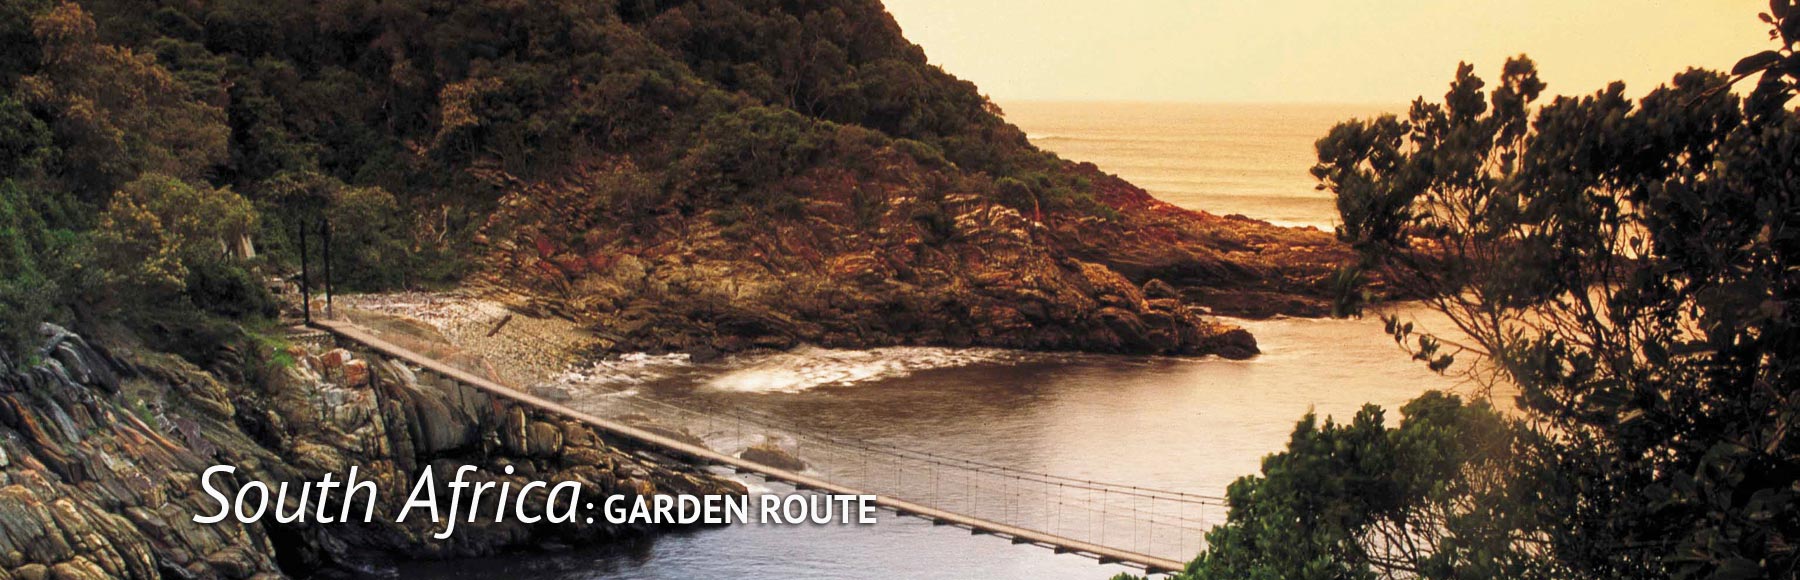 South Africa Garden Route